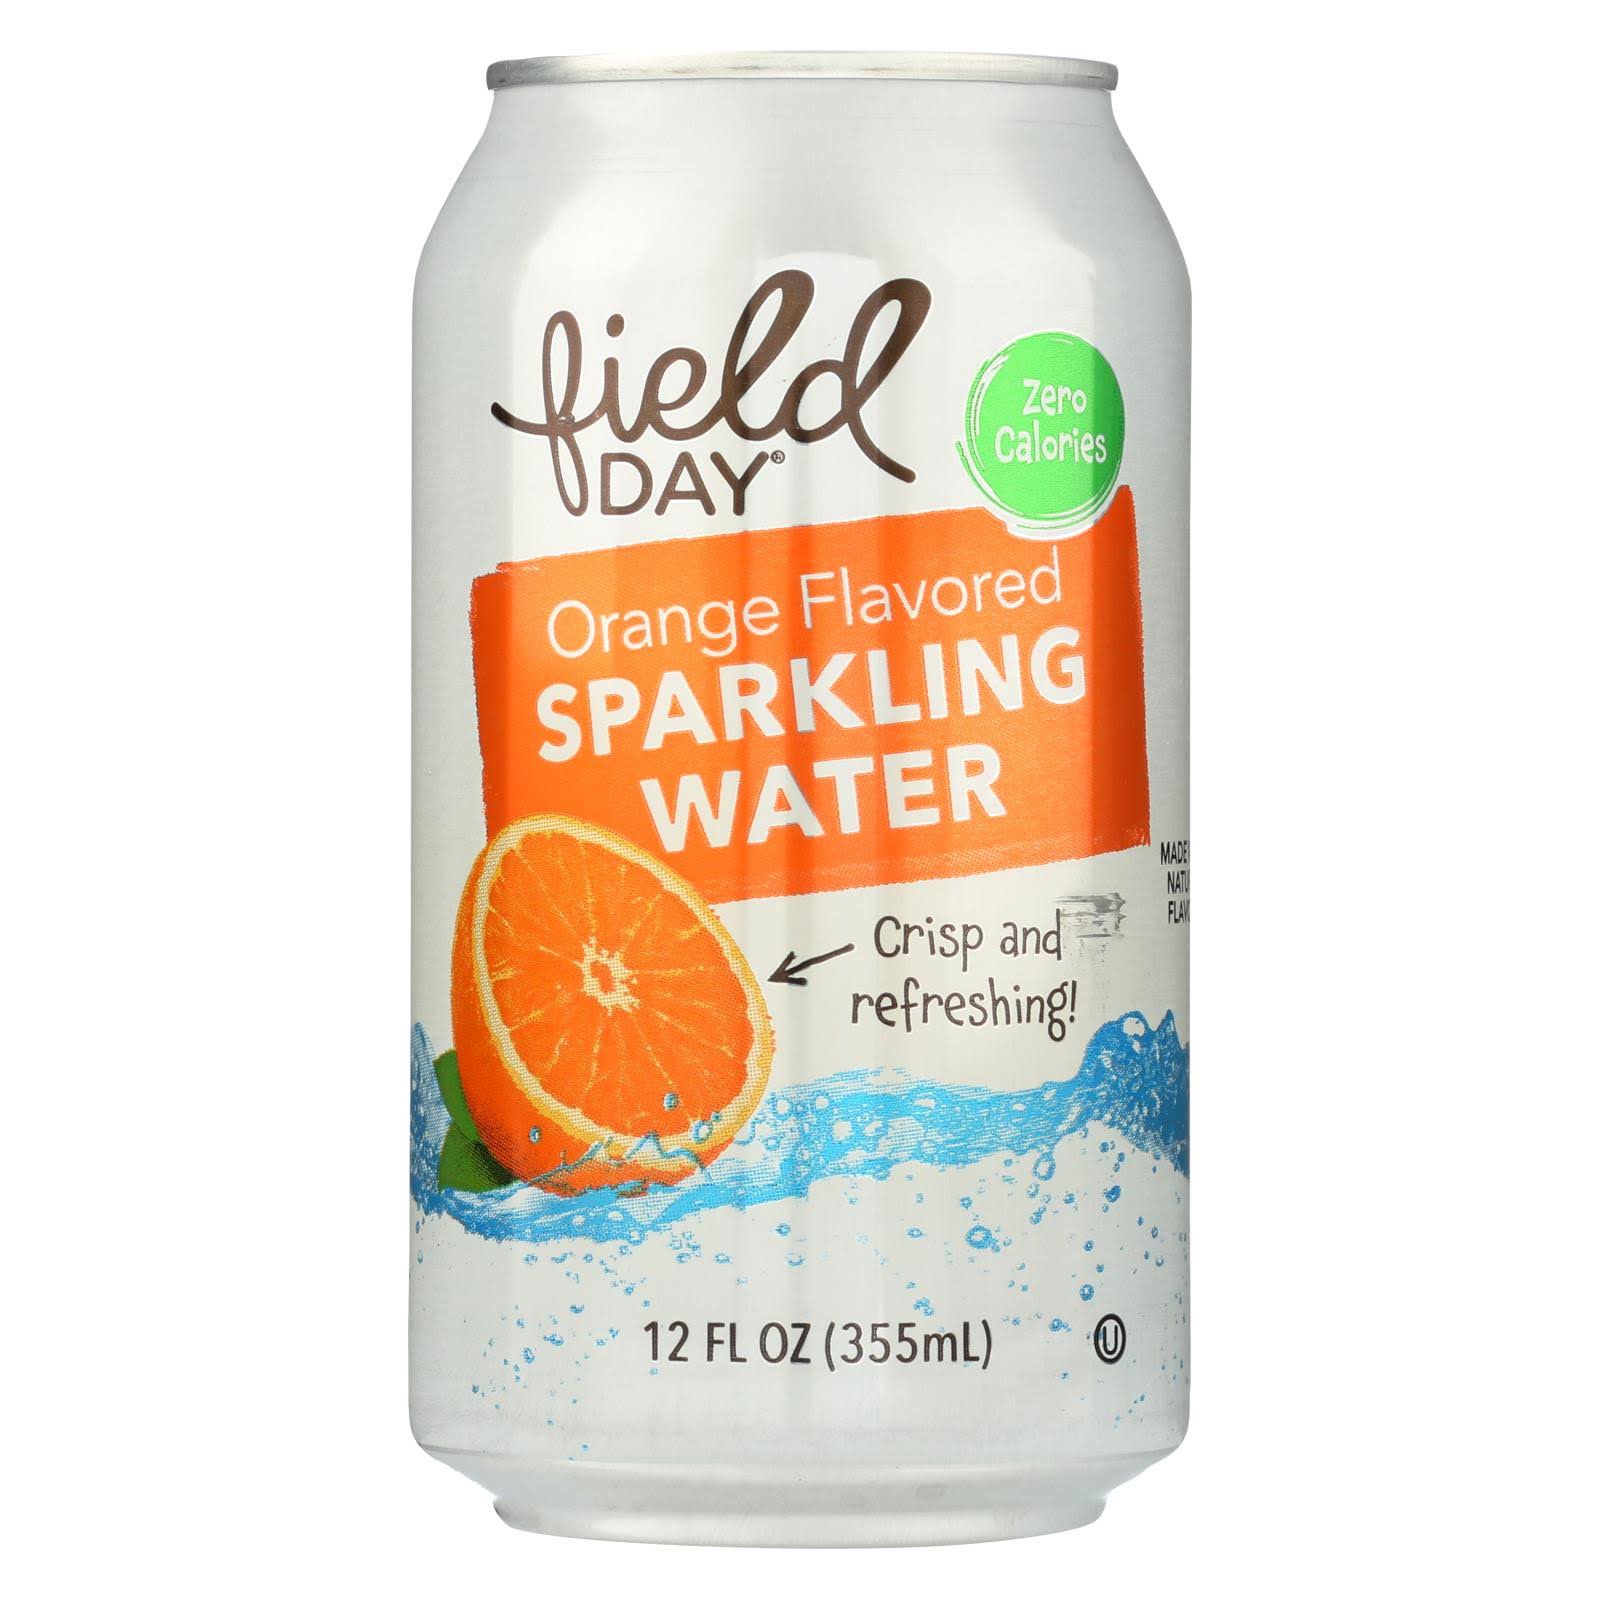 Field Day Orange Flavored Sparkling Water - 12 fl oz